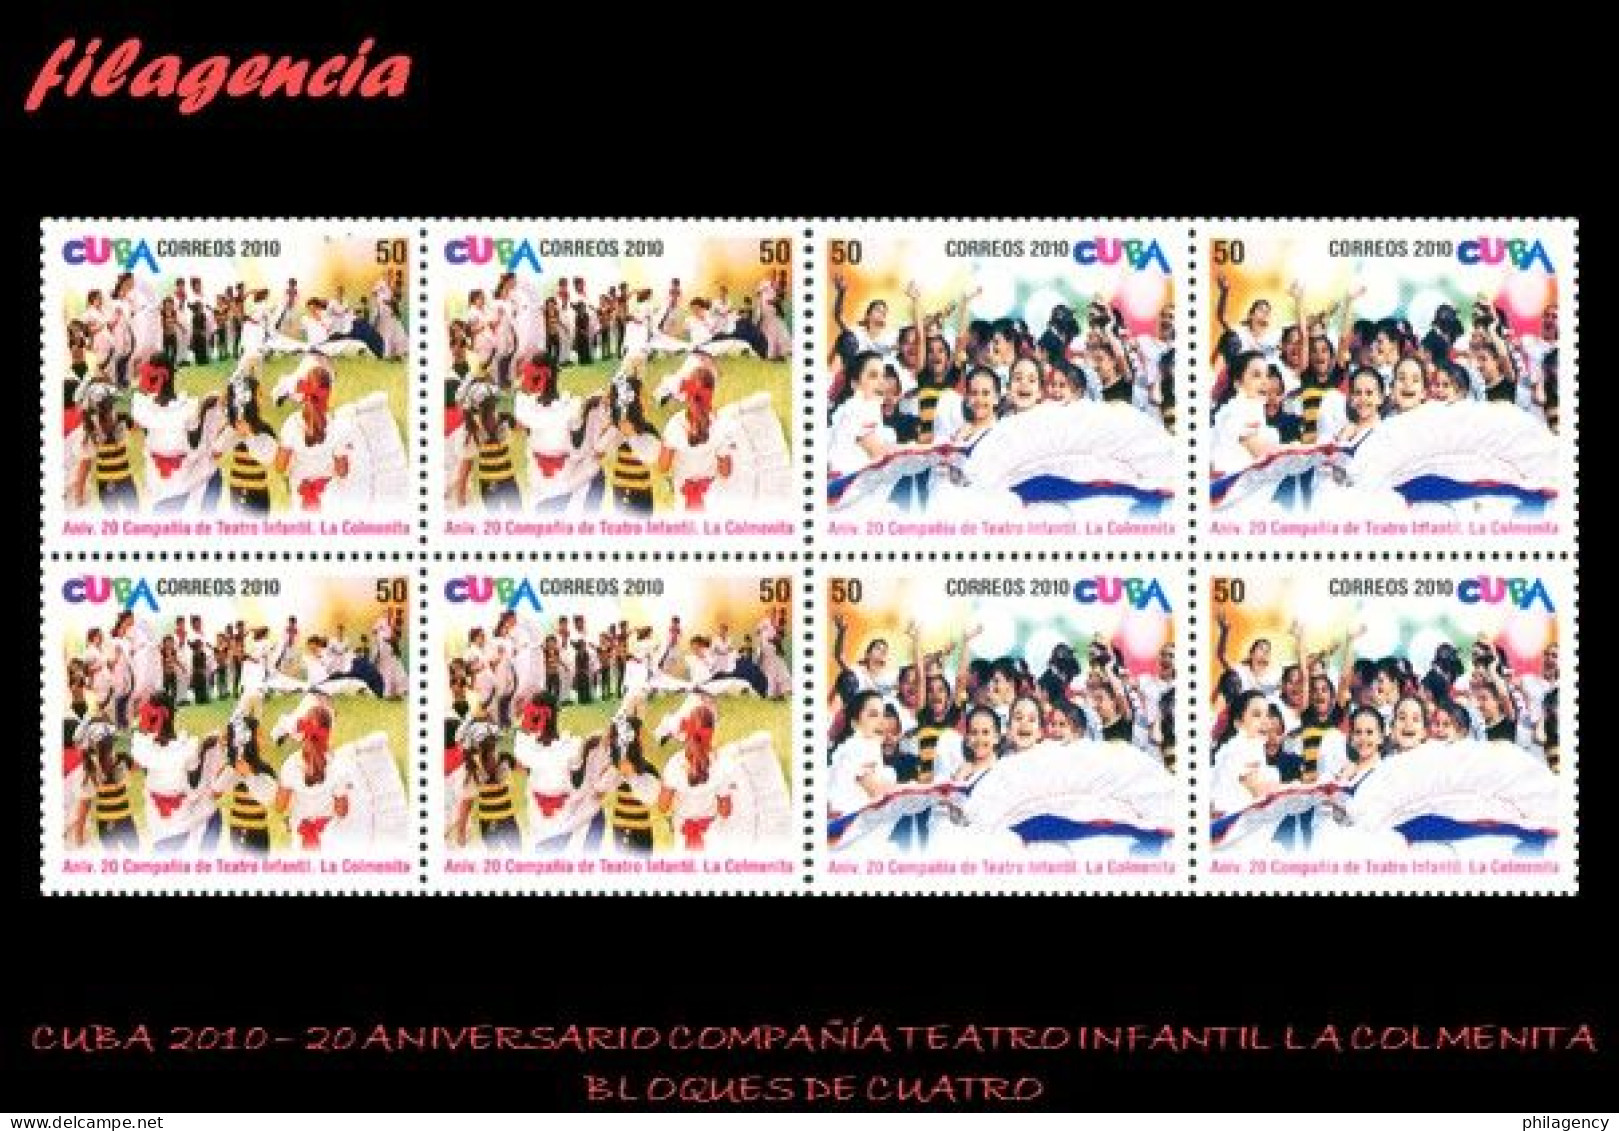 CUBA. BLOQUES DE CUATRO. 2010-09 20 ANIVERSARIO DE LA COMPAÑÍA DE TEATRO INFANTIL LA COLMENITA - Unused Stamps